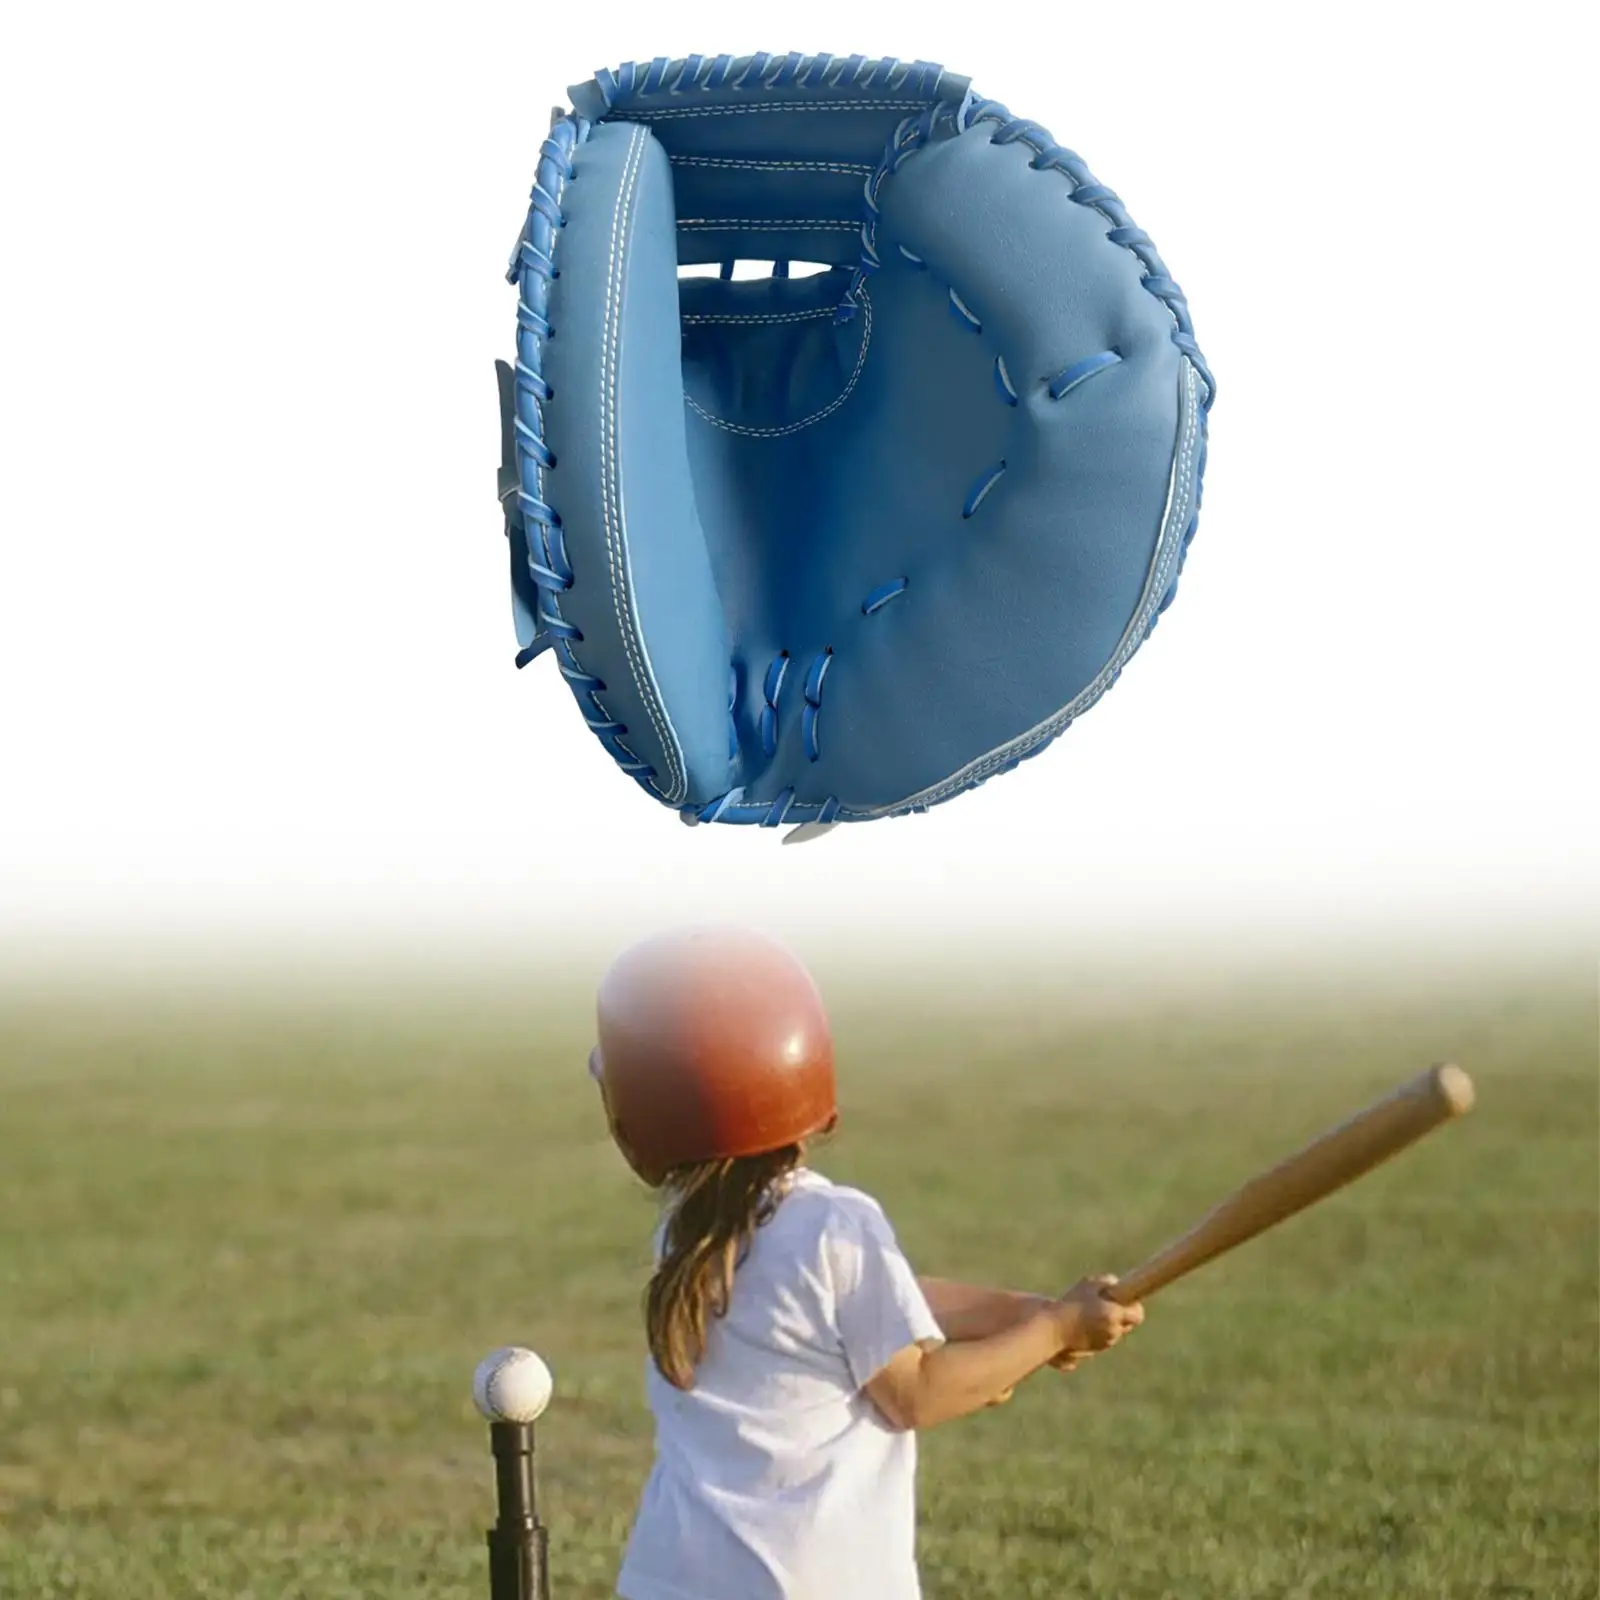 Baseball Glove Durable 12.5